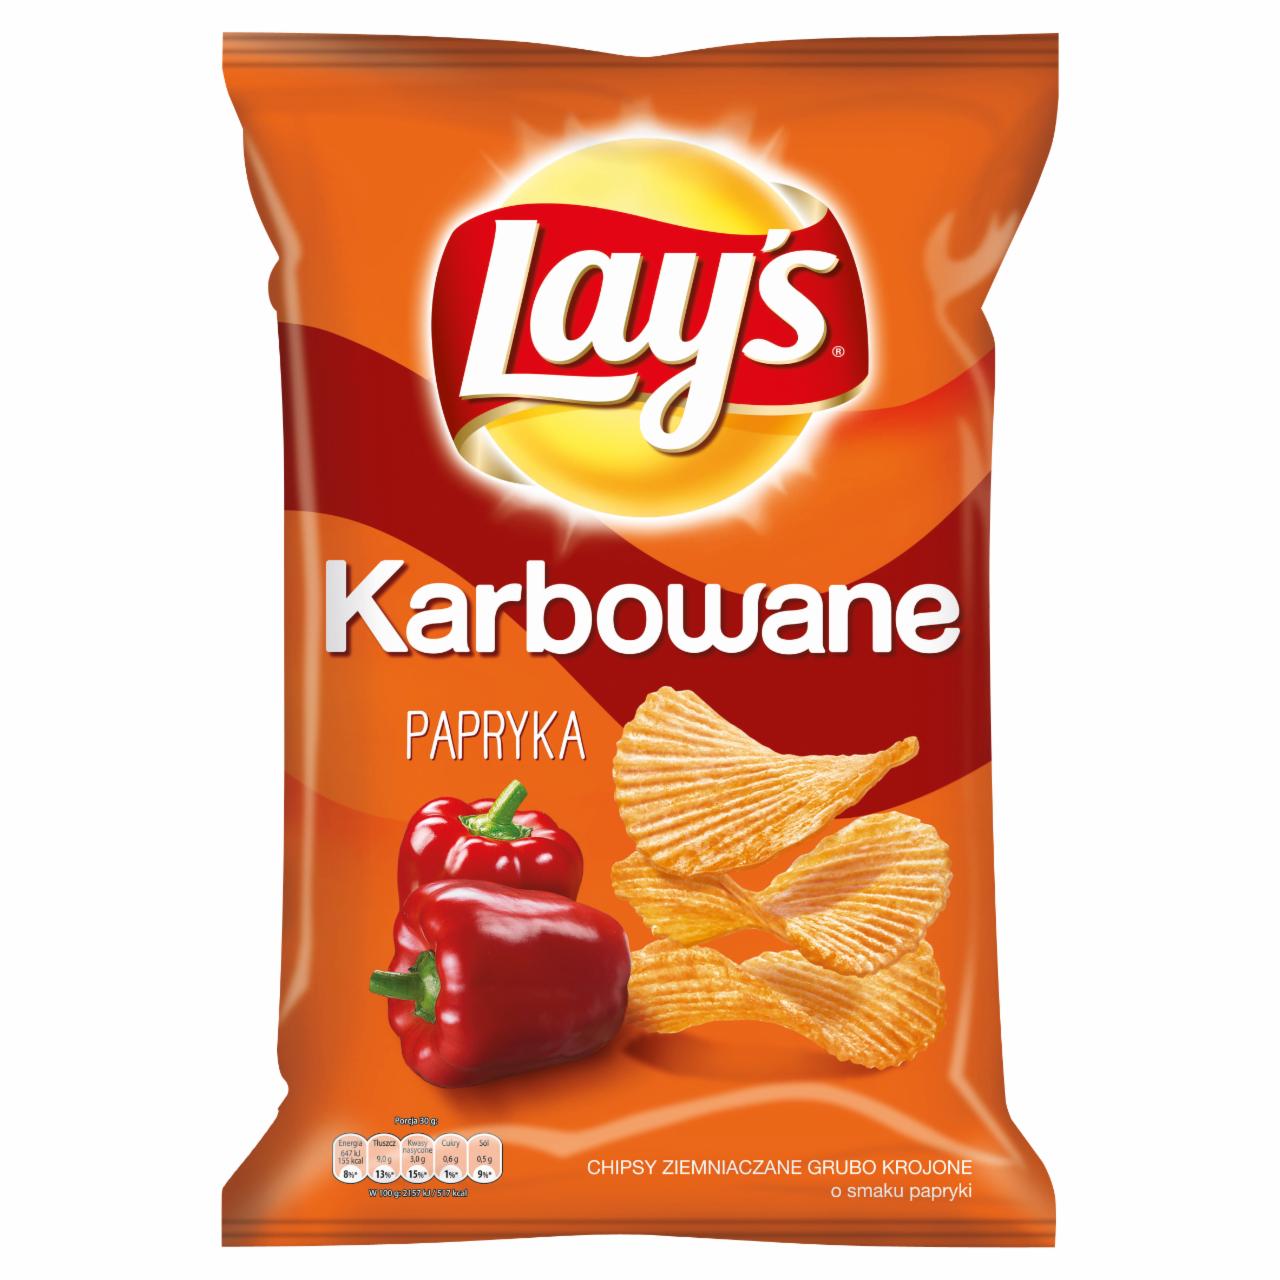 Zdjęcia - Lay's Karbowane o smaku Papryka Chipsy ziemniaczane 150 g